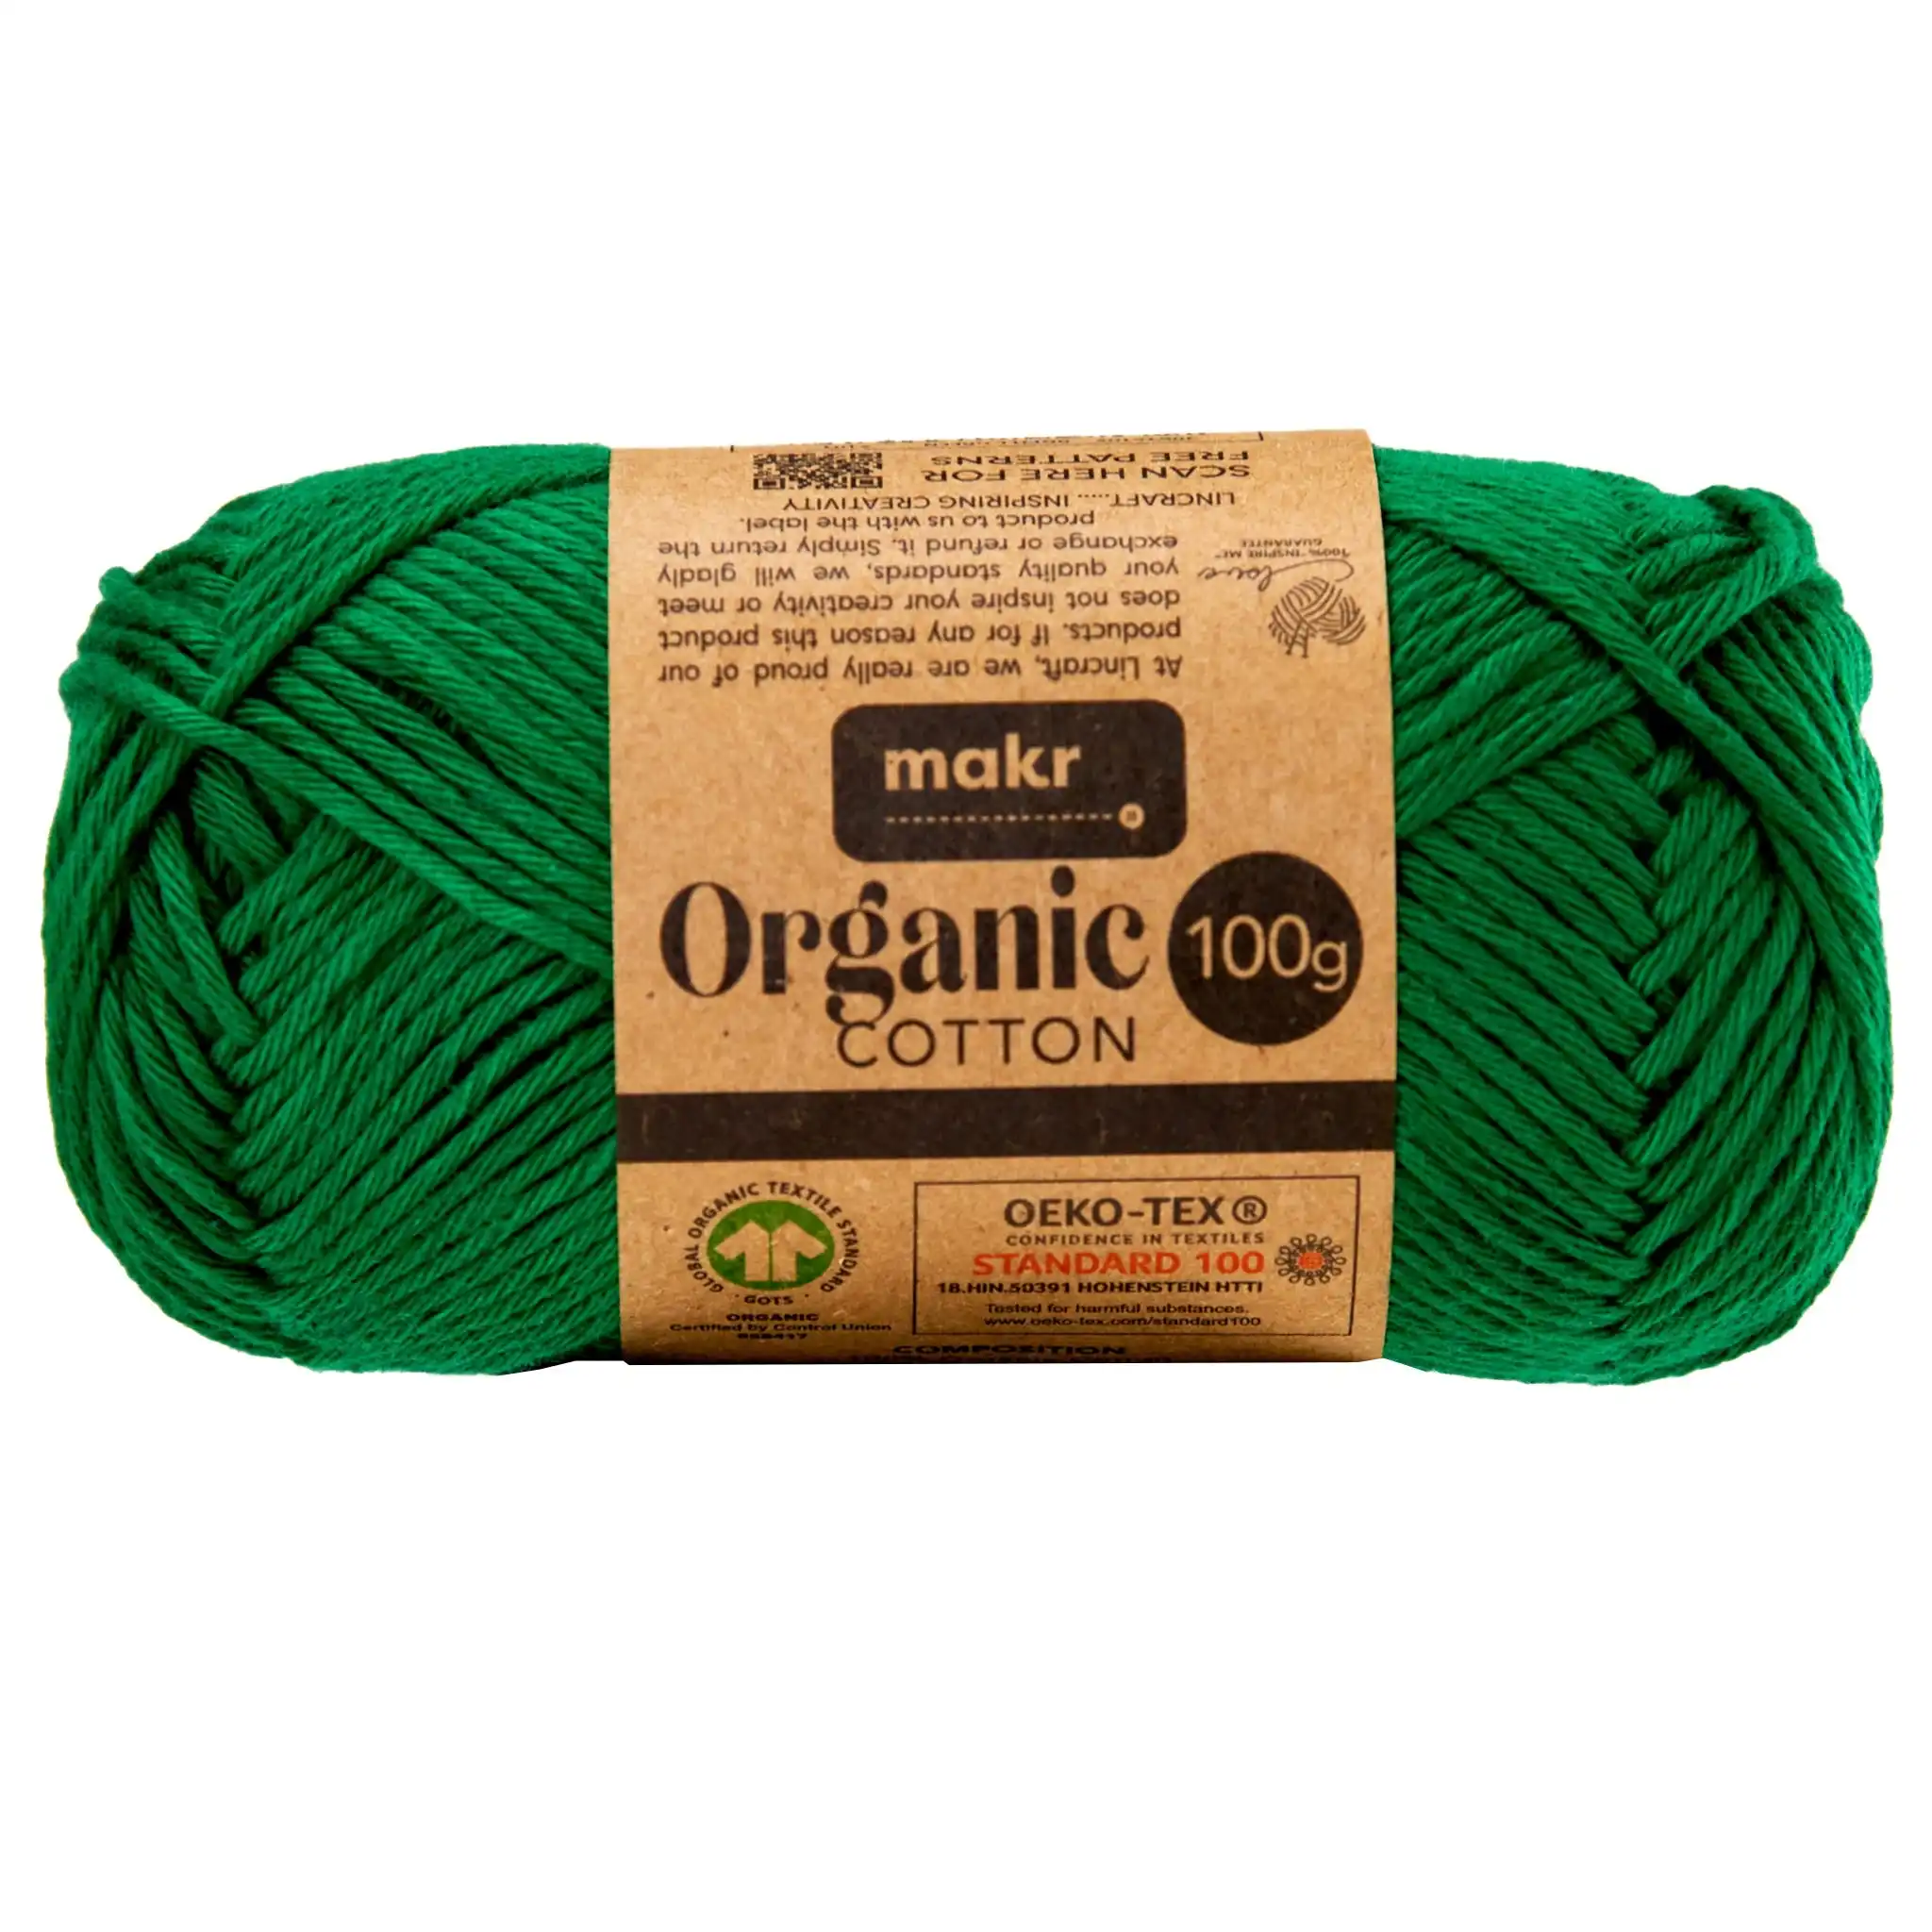 Makr Organic Cotton Crochet & Knitting Yarn, Bottle Green- 100g Cotton Yarn